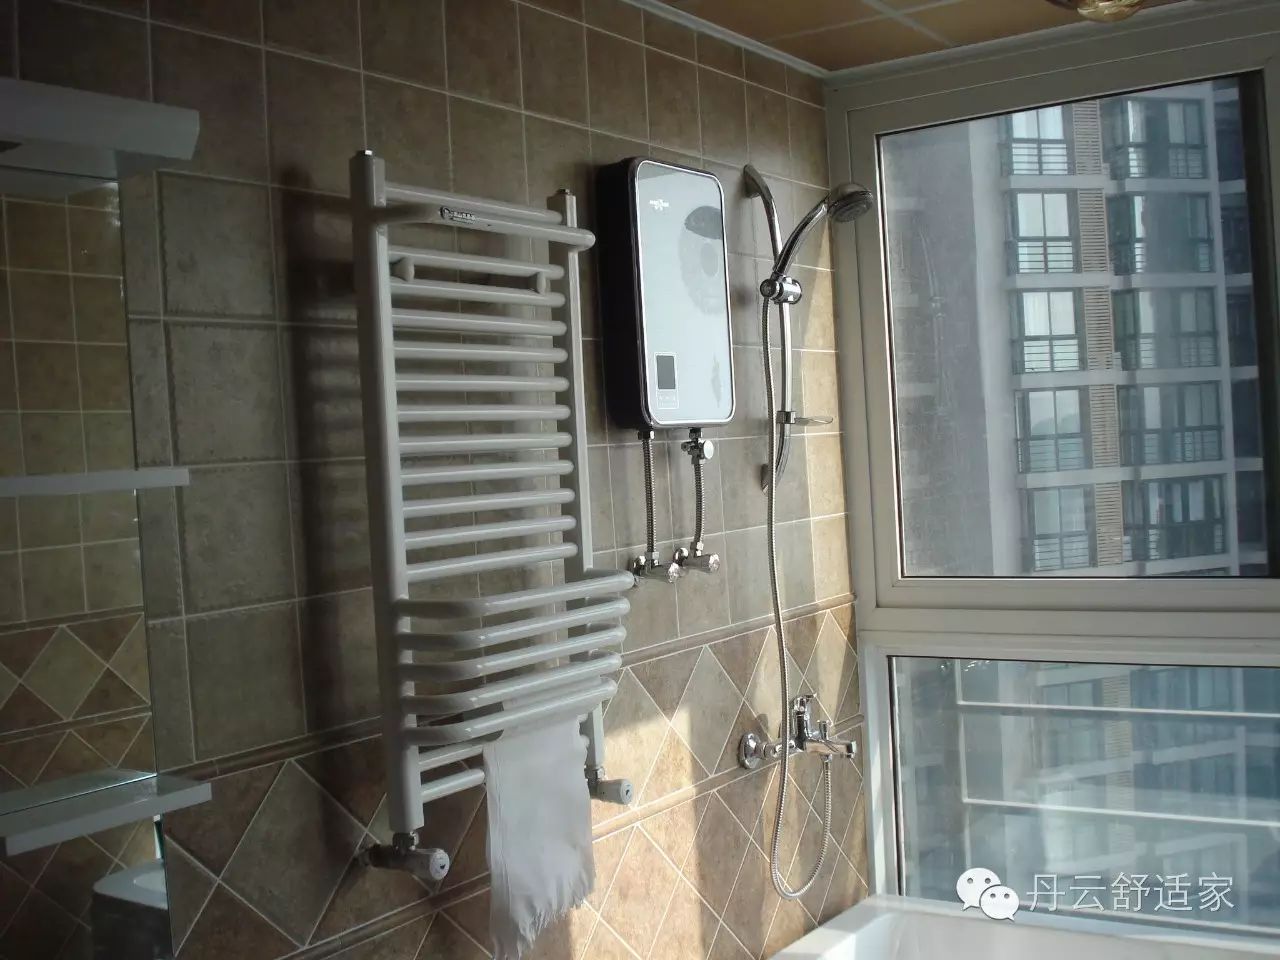 您对电热水器了解吗?